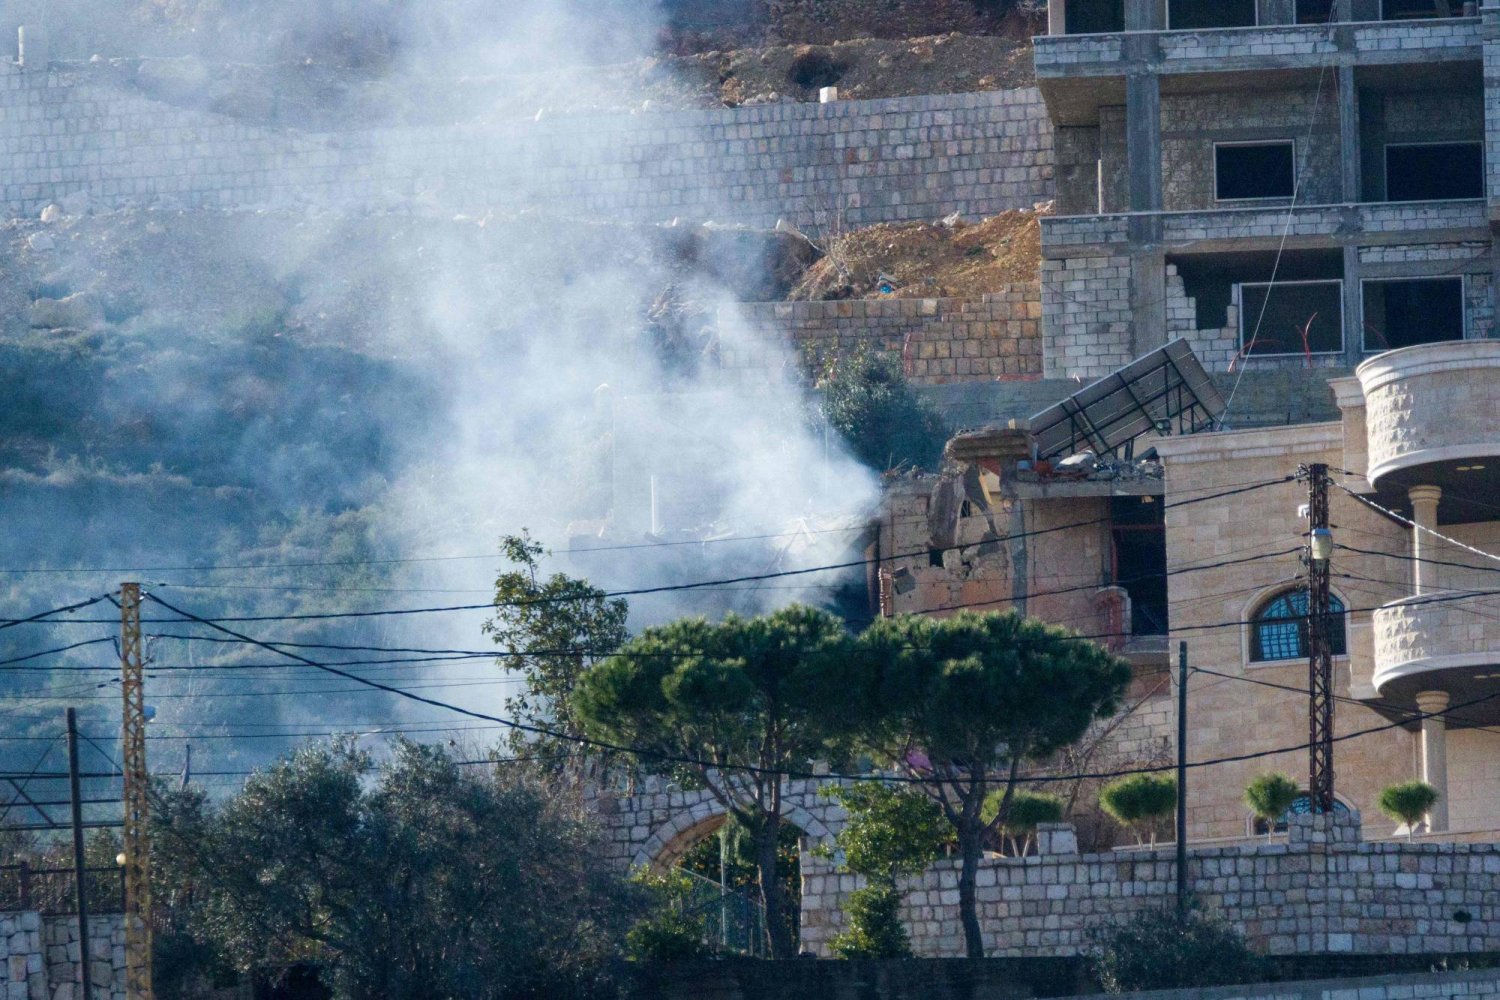 دخان غارة إسرائيلية يتصاعد من منزل دُمّر بالكامل في بلدة كفركلا الحدودية بجنوب لبنان (أ.ف.ب)